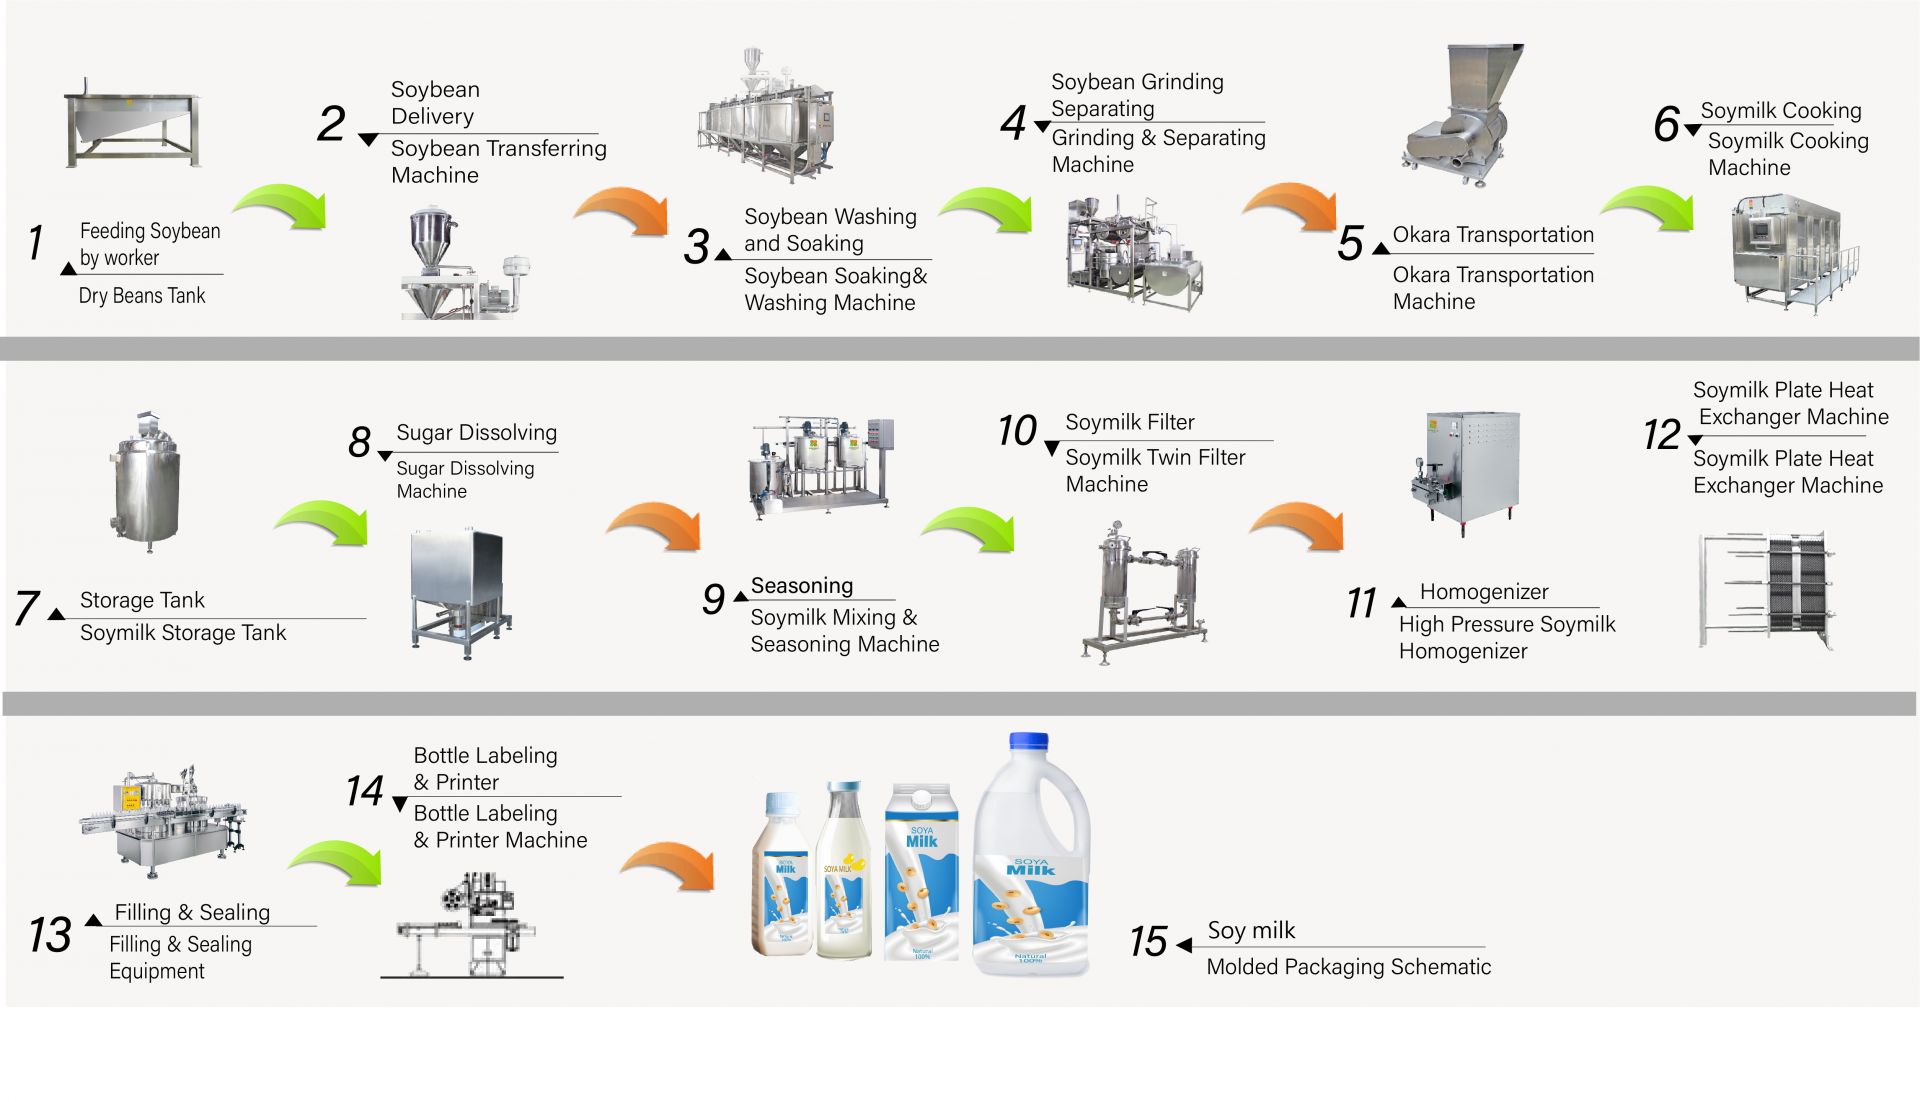 Processen att göra sojamjölk i fabriken, Hur man gör sojamjölk, Producera sojamjölk, sojamjölksflödesschema, Sojamjölksprocess, sojamjölksproduktionsprocess, sojamjölksprocess, sojamjölksprocessflödesschema, Sojamjölksbehandlingsflöde, Sojamjölksbehandlingsprocess, sojamjölkproduktion, sojamjölkproduktionsflödesschema, sojamjölkproduktionsprocess, sojabönsbehandlingsflödesschema, Automatisk sojamjölksmaskin, Automatisk sojamjölksmaskintillverkning, Enkel tofu-tillverkare, Industriell produktion av sojamjölk, Industriell sojamjölktillverkning, Industriell sojamjölksmaskin, Industriell tofu-maskin, växtmjölksmaskin, Maskin för växtmjölkproduktion, produktion av sojamjölk, Sojadrinkmaskin, Produktionslinje för sojadrink, Sojadrinkmaskin, kommersiell sojamjölksmaskin, sojamjölks- och tofu-tillverkningsmaskin, Maskiner och utrustning för sojamjölksdryck, Sojamjölksmatlagningsmaskin, sojamjölksfabrik, sojamjölksmaskin, kommersiell sojamjölksmaskin, sojamjölksmaskin tillverkad i Taiwan, sojamjölksmaskiner, sojamjölksmaskiner och utrustning, sojamjölkstillverkare, sojamjölksmaskin, sojamjölkstillverkare, Sojamjölkproduktion, sojamjölkproduktionsutrustning, Sojamjölkfabrik, Sojamjölkproduktionslinje, sojamjölkmaskinpris, sojabönsbearbetningsmaskin, sojamjölksfabrik, sojamjölksmaskin